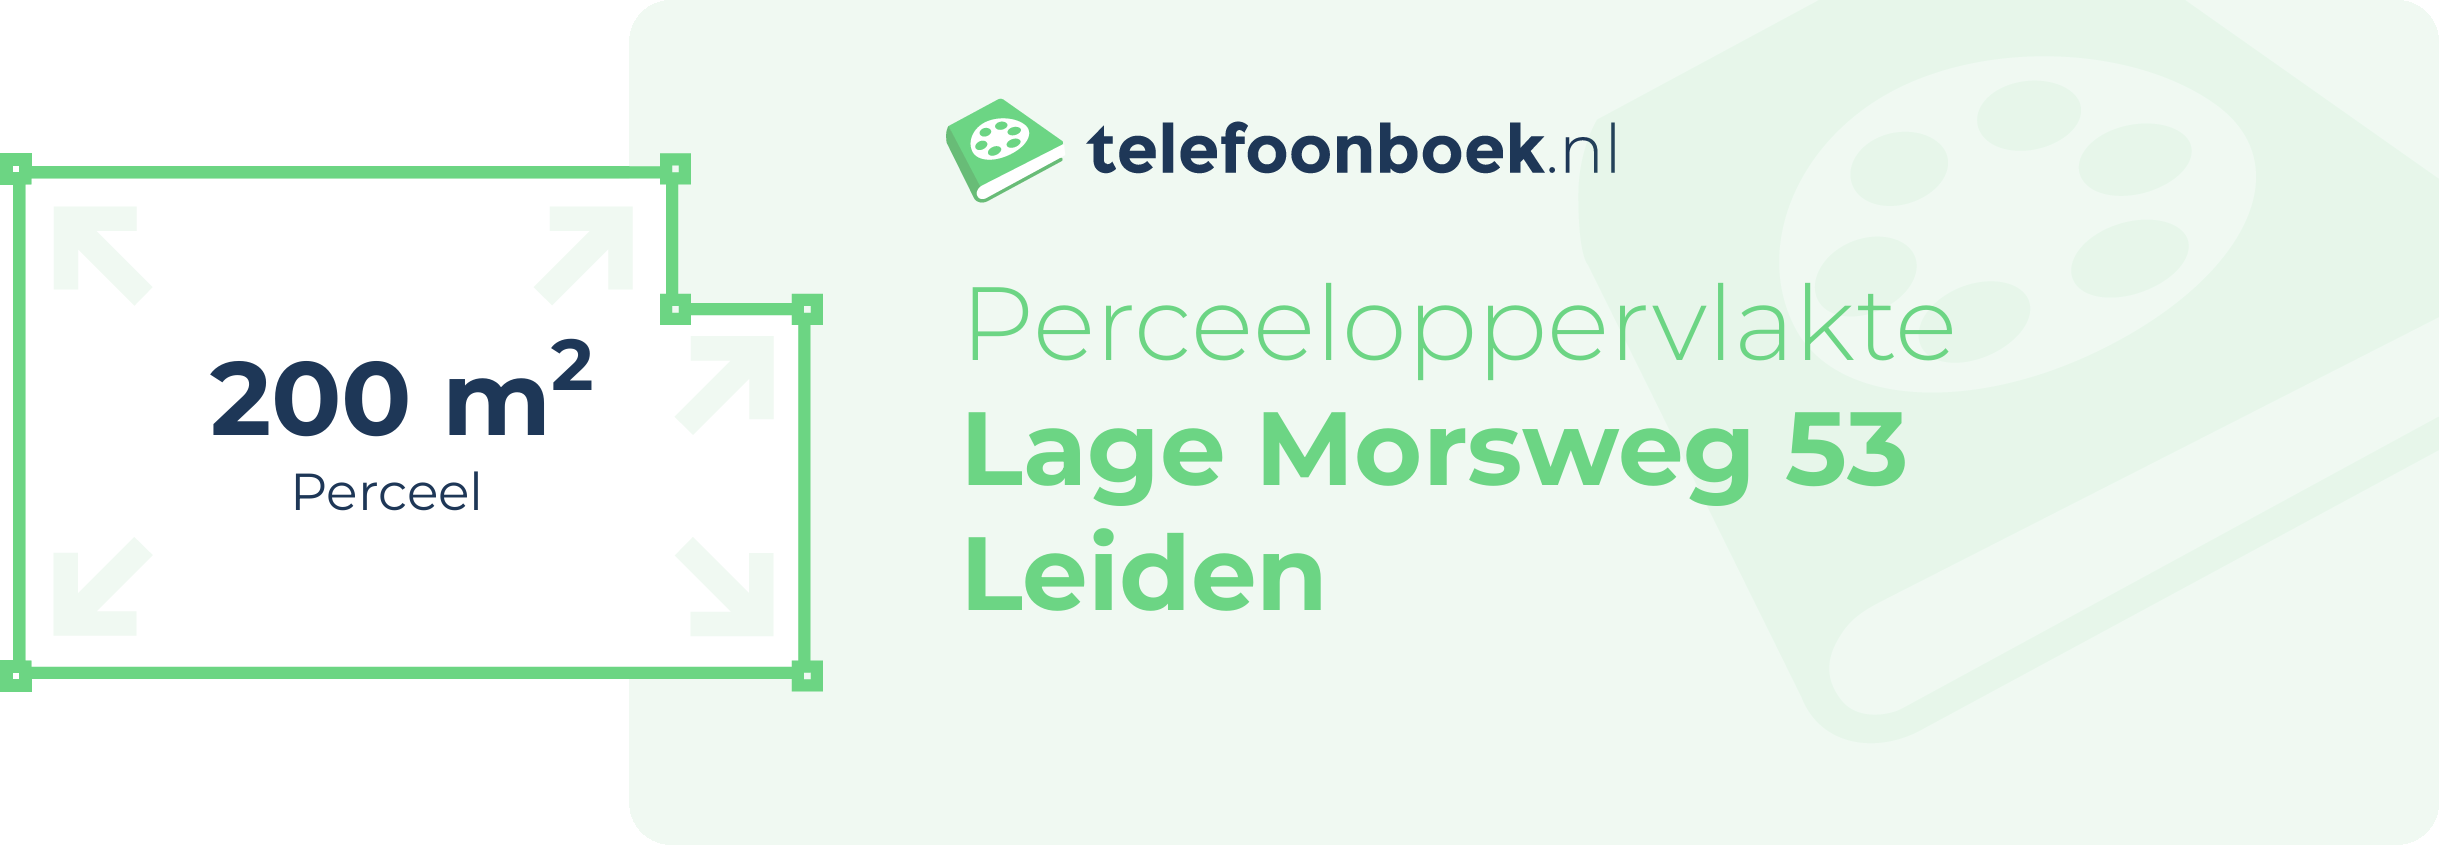 Perceeloppervlakte Lage Morsweg 53 Leiden